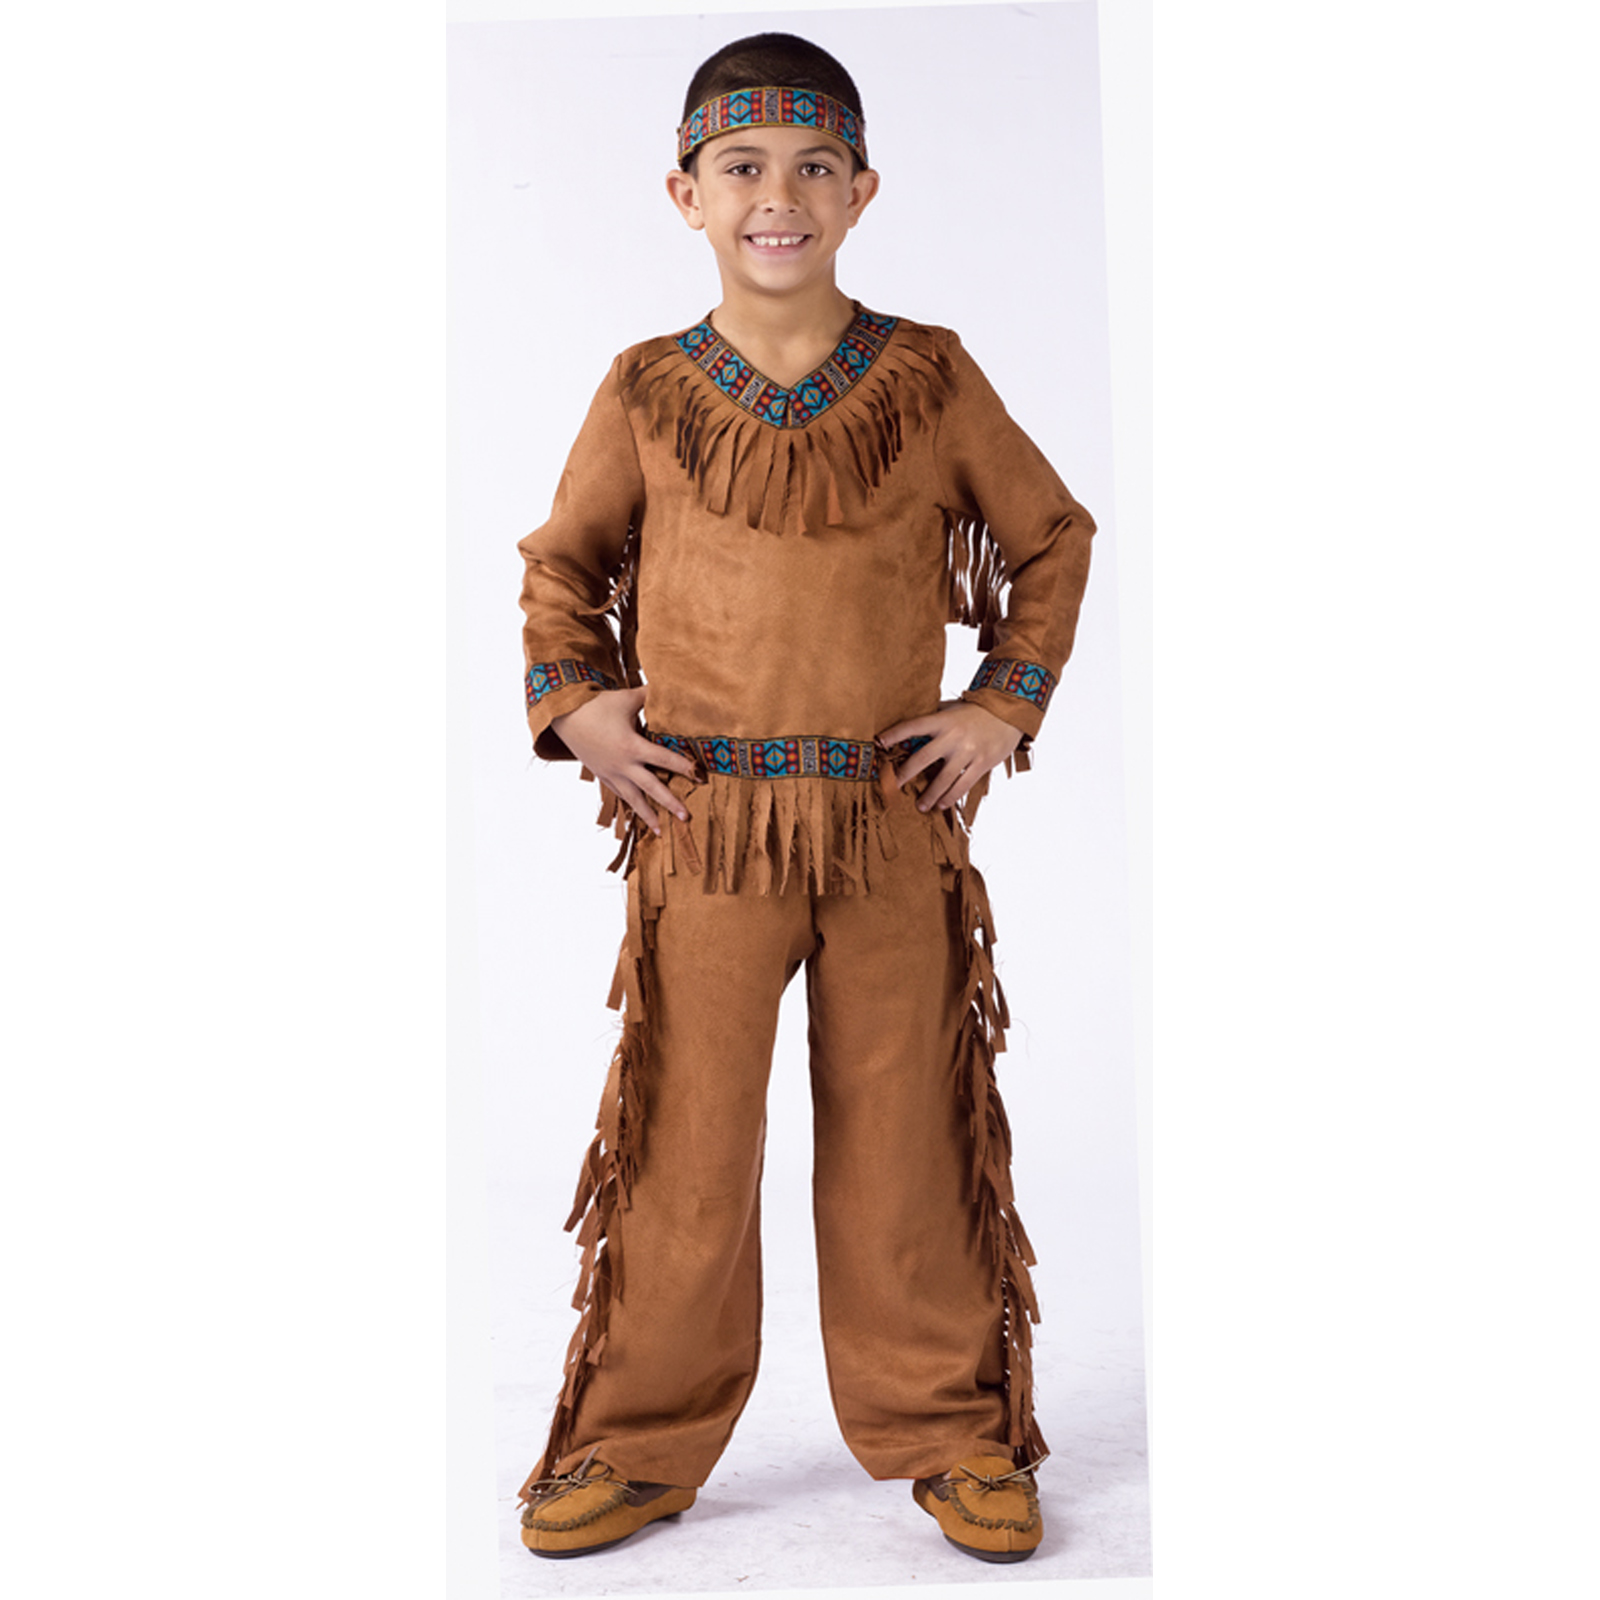 Дети индейцы мальчики. Костюм индейца. Детский костюм индейца. Новогодний костюм индейца. Индийский костюм для мальчика.